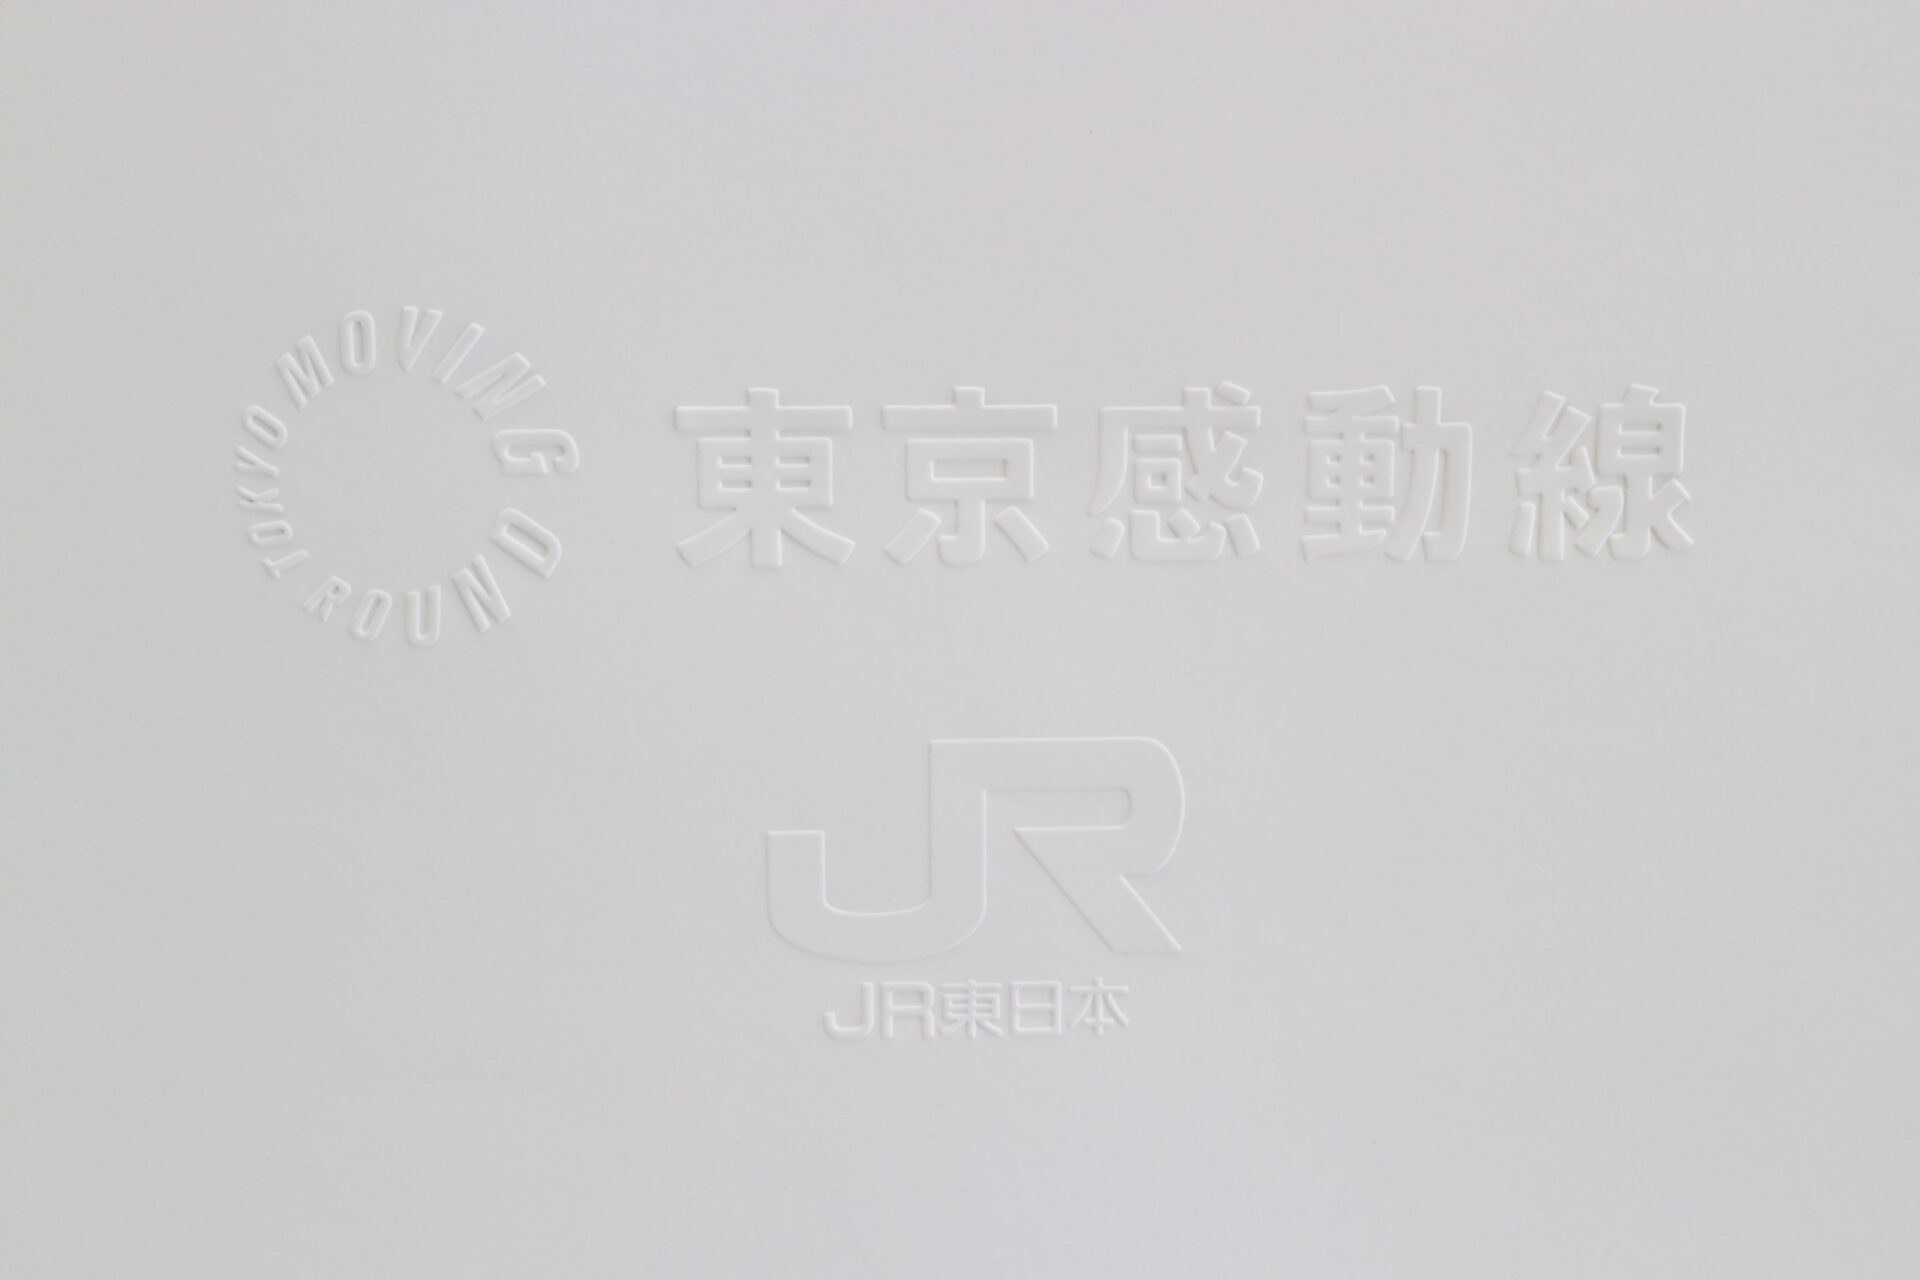 東京感動線のロゴとJR東日本のロゴが浮き出し文字でかかれています